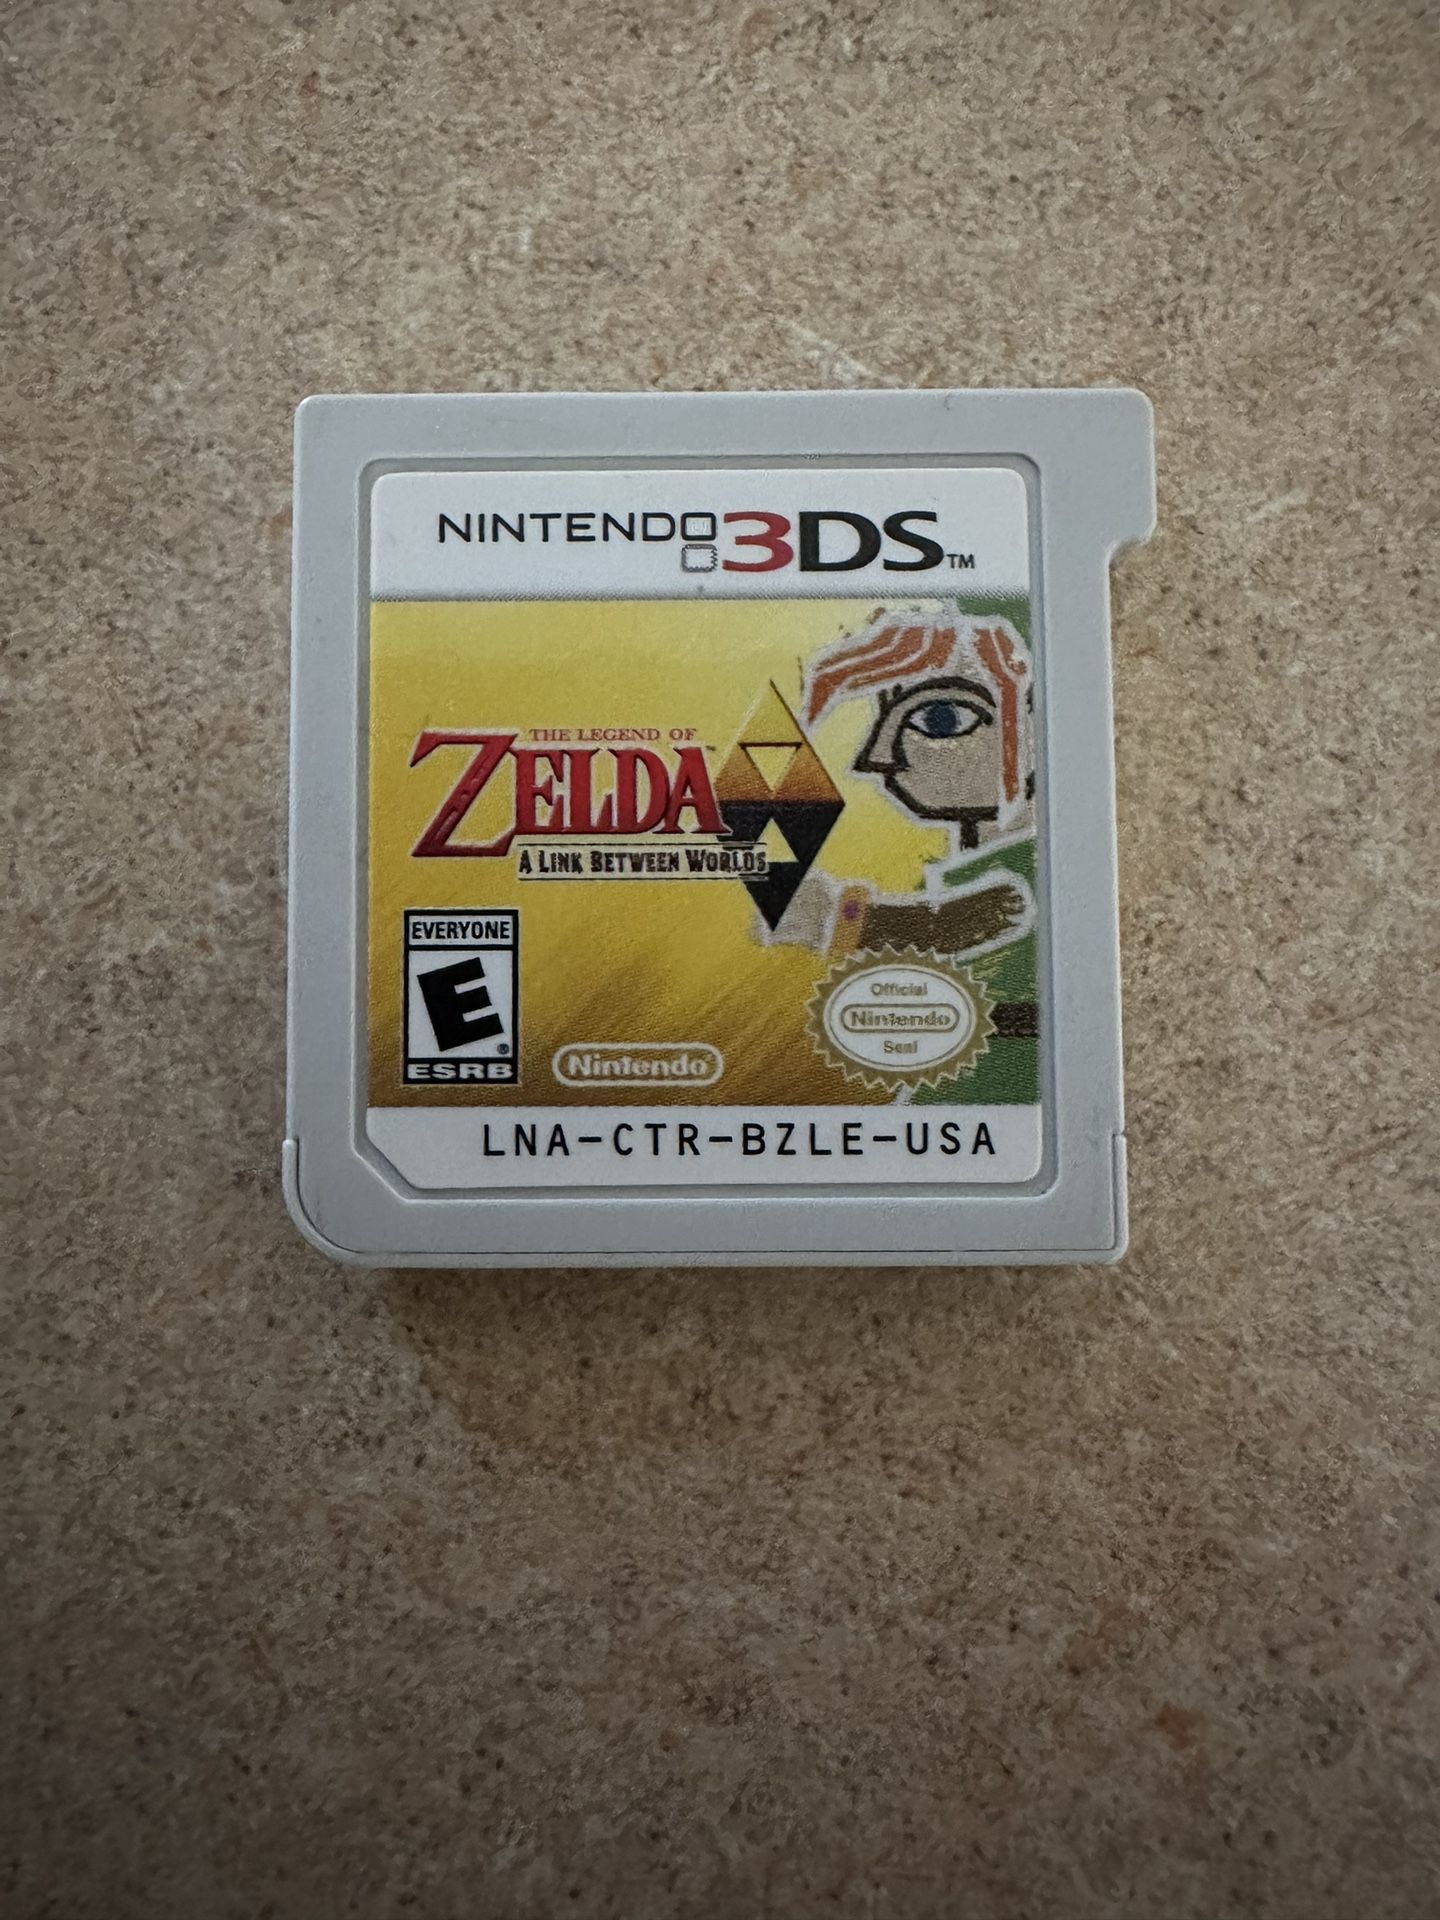 Zelda Link Between Worlds